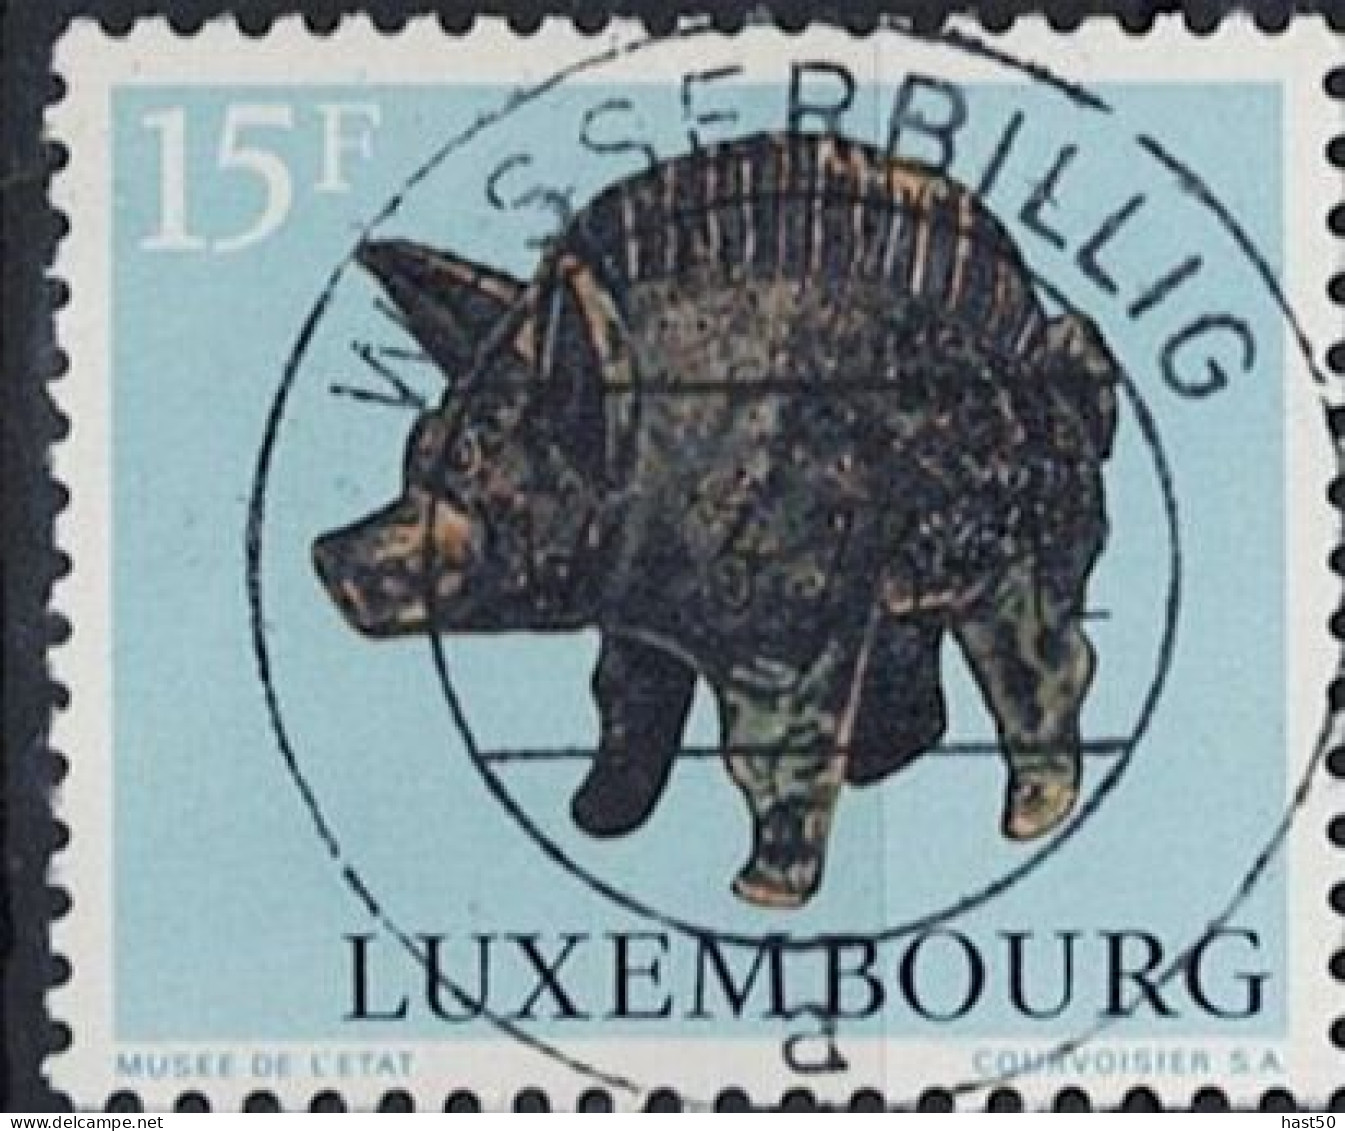 Luxemburg - Keltische Und Gallorömische Tierdarstellungen (MiNr: 861) 1973 - Gest Used Obl - Oblitérés